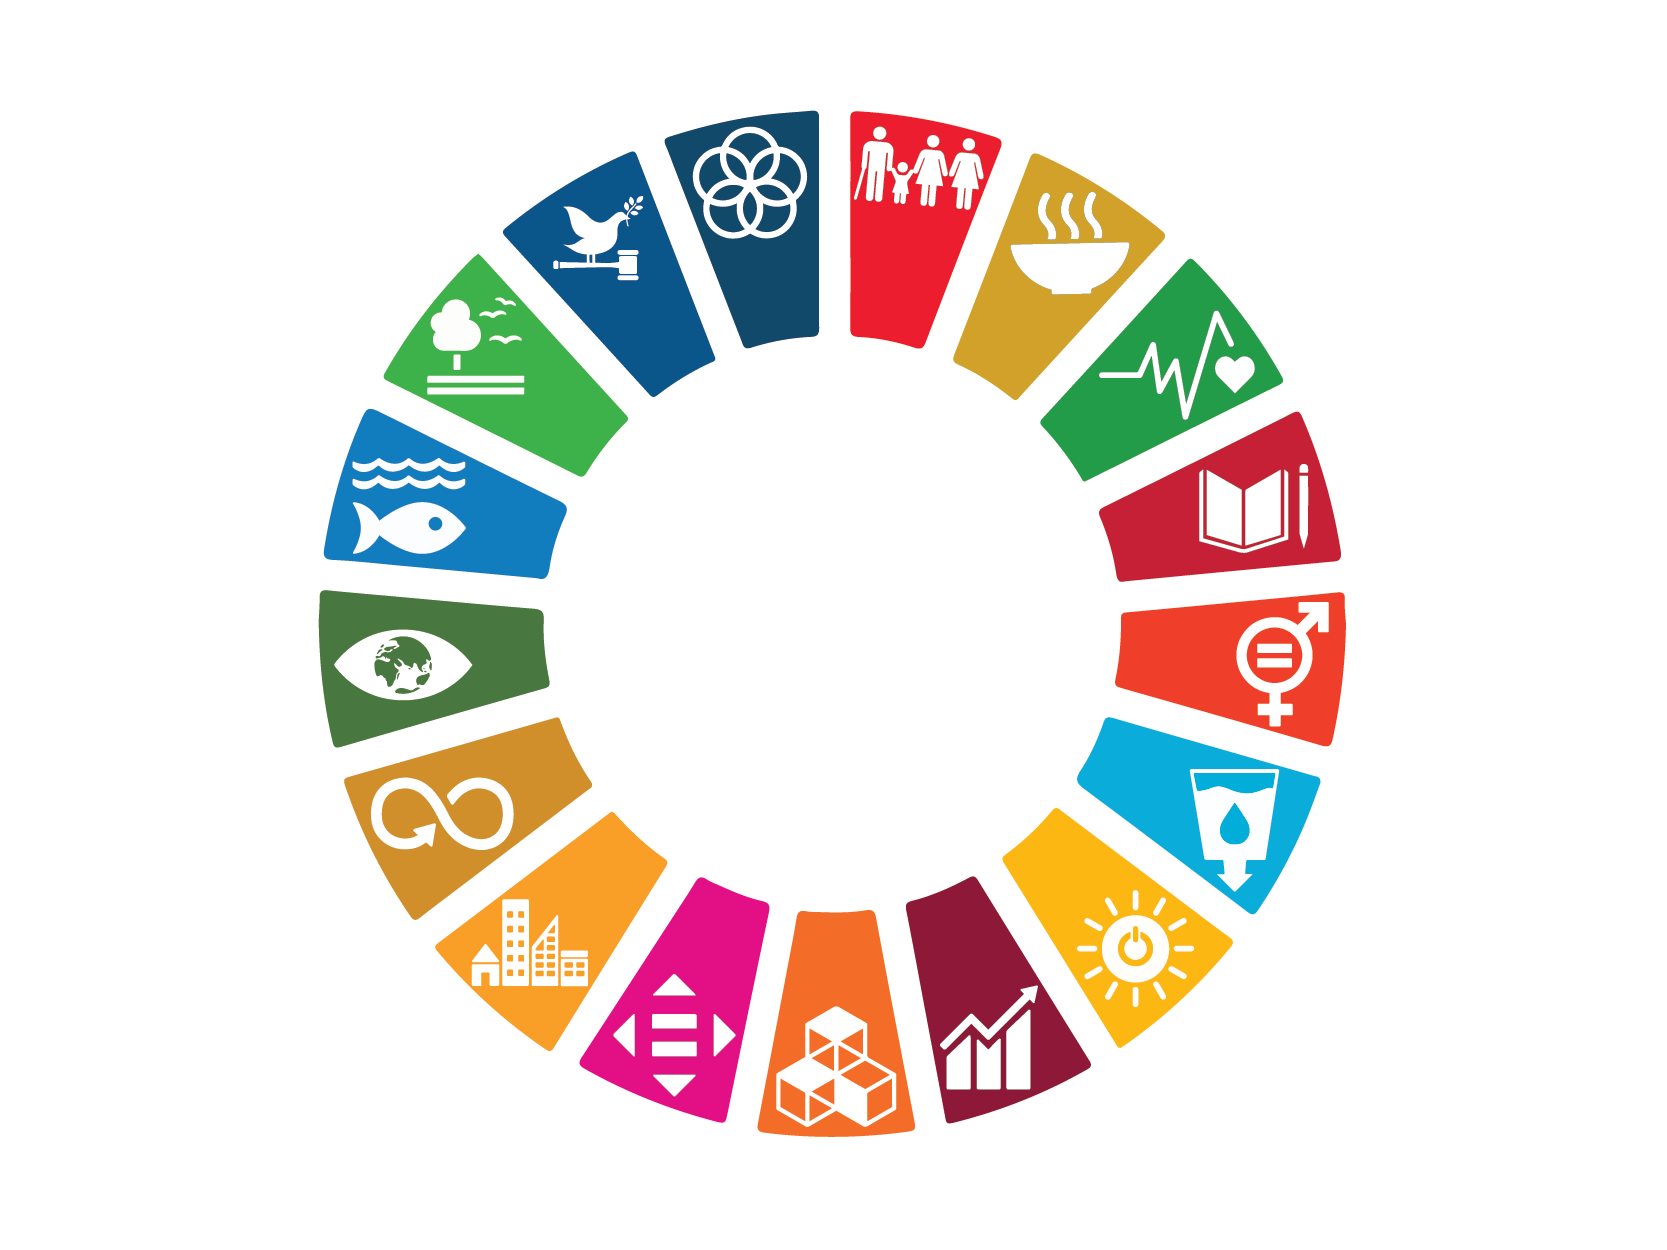 Le symbole des ODD des Nations Unies, une roue divisée en 17 parties